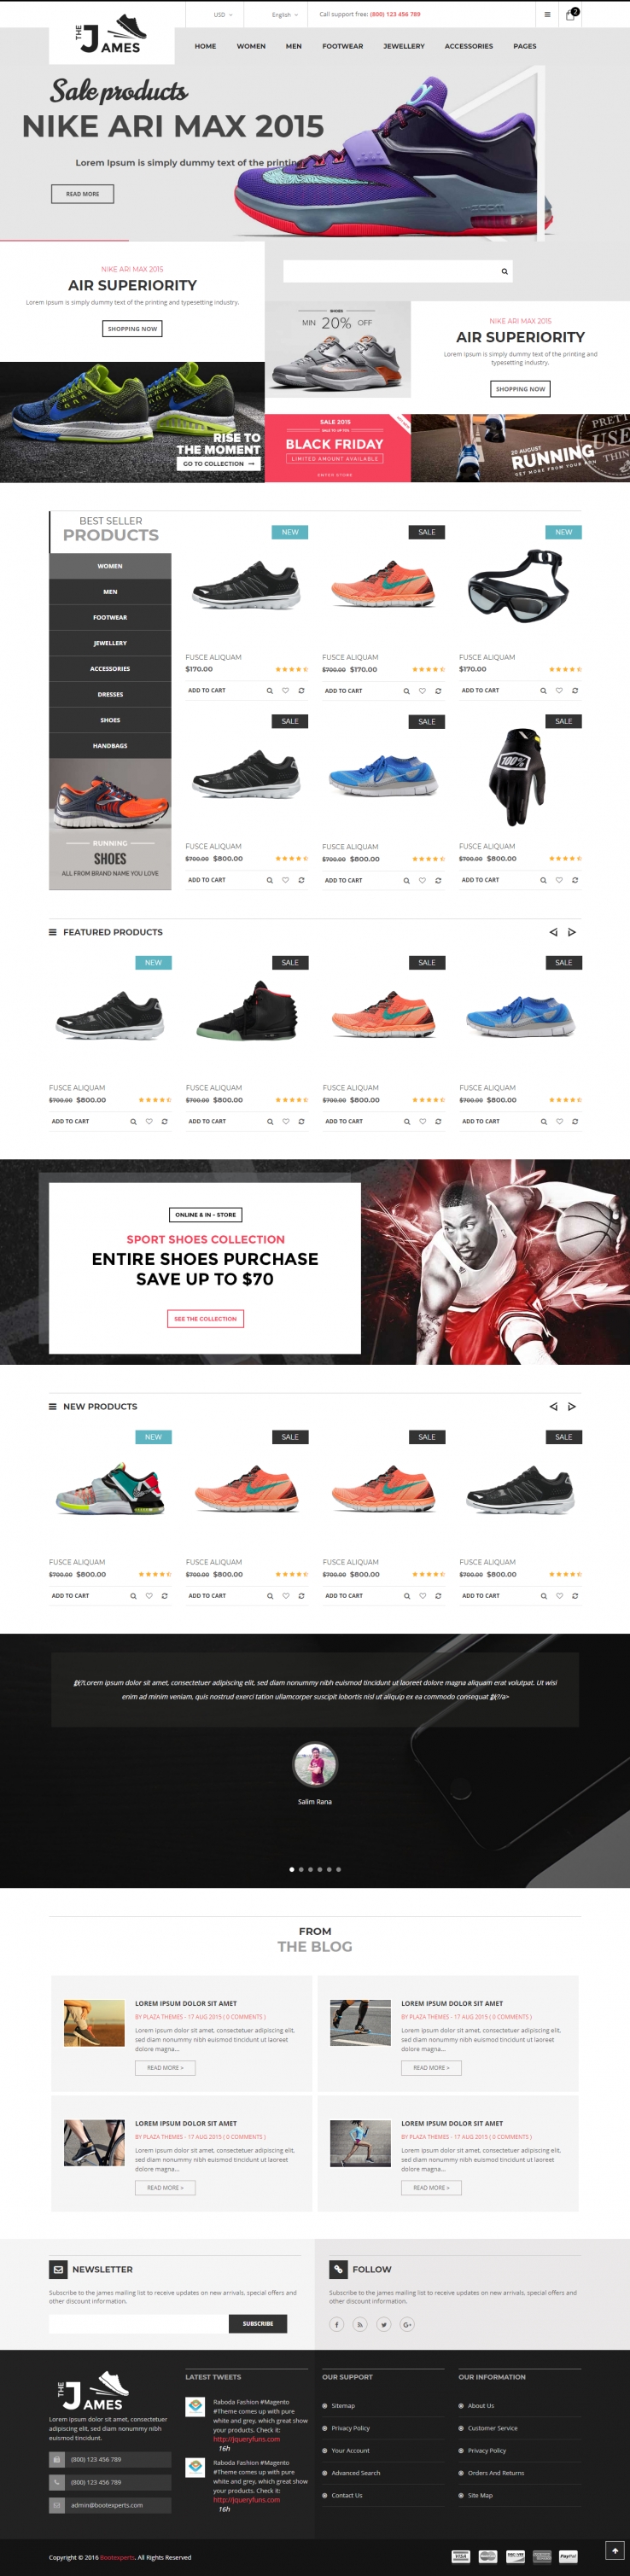 粉色欧美风格的鞋子销售整站网站源码下载